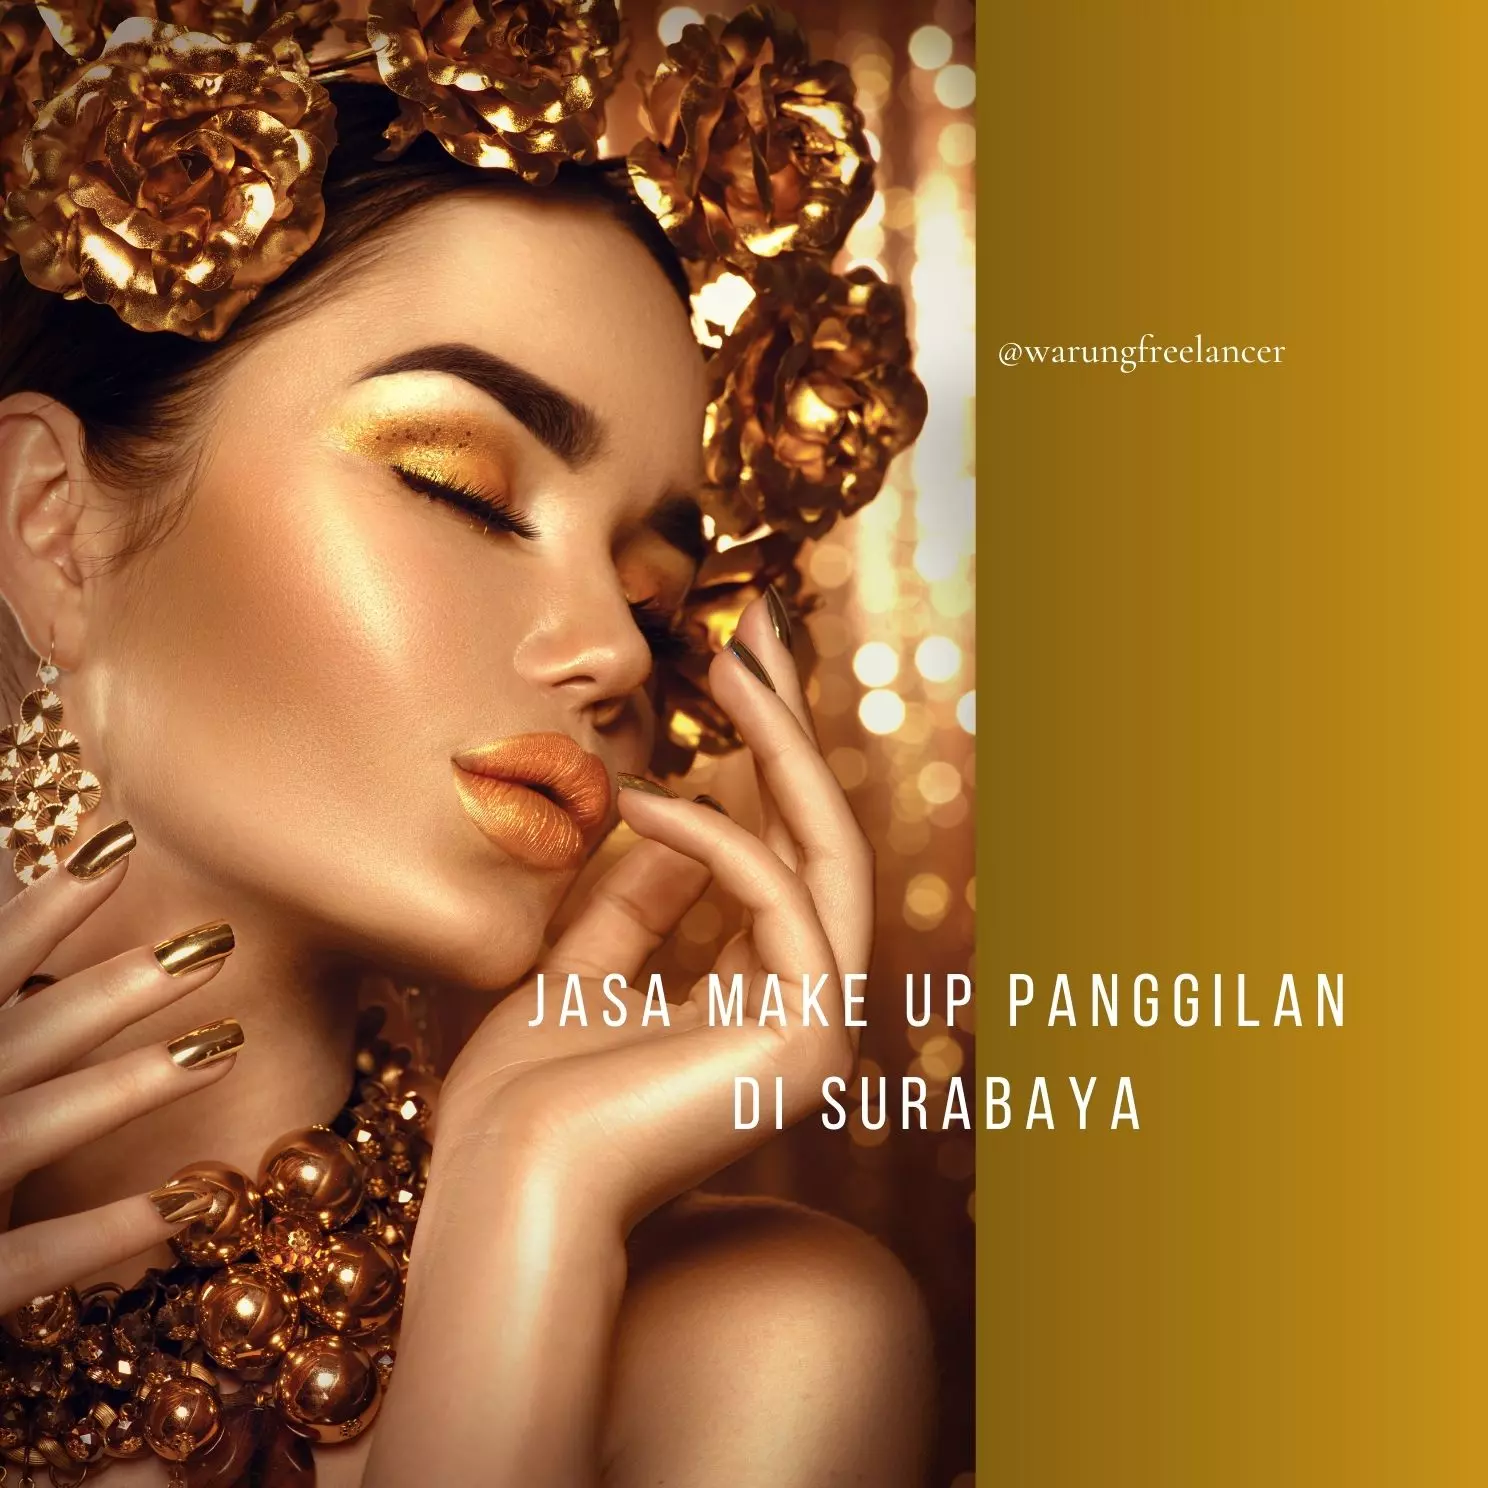 Pengertian Jasa Make Up Panggilan di Surabaya